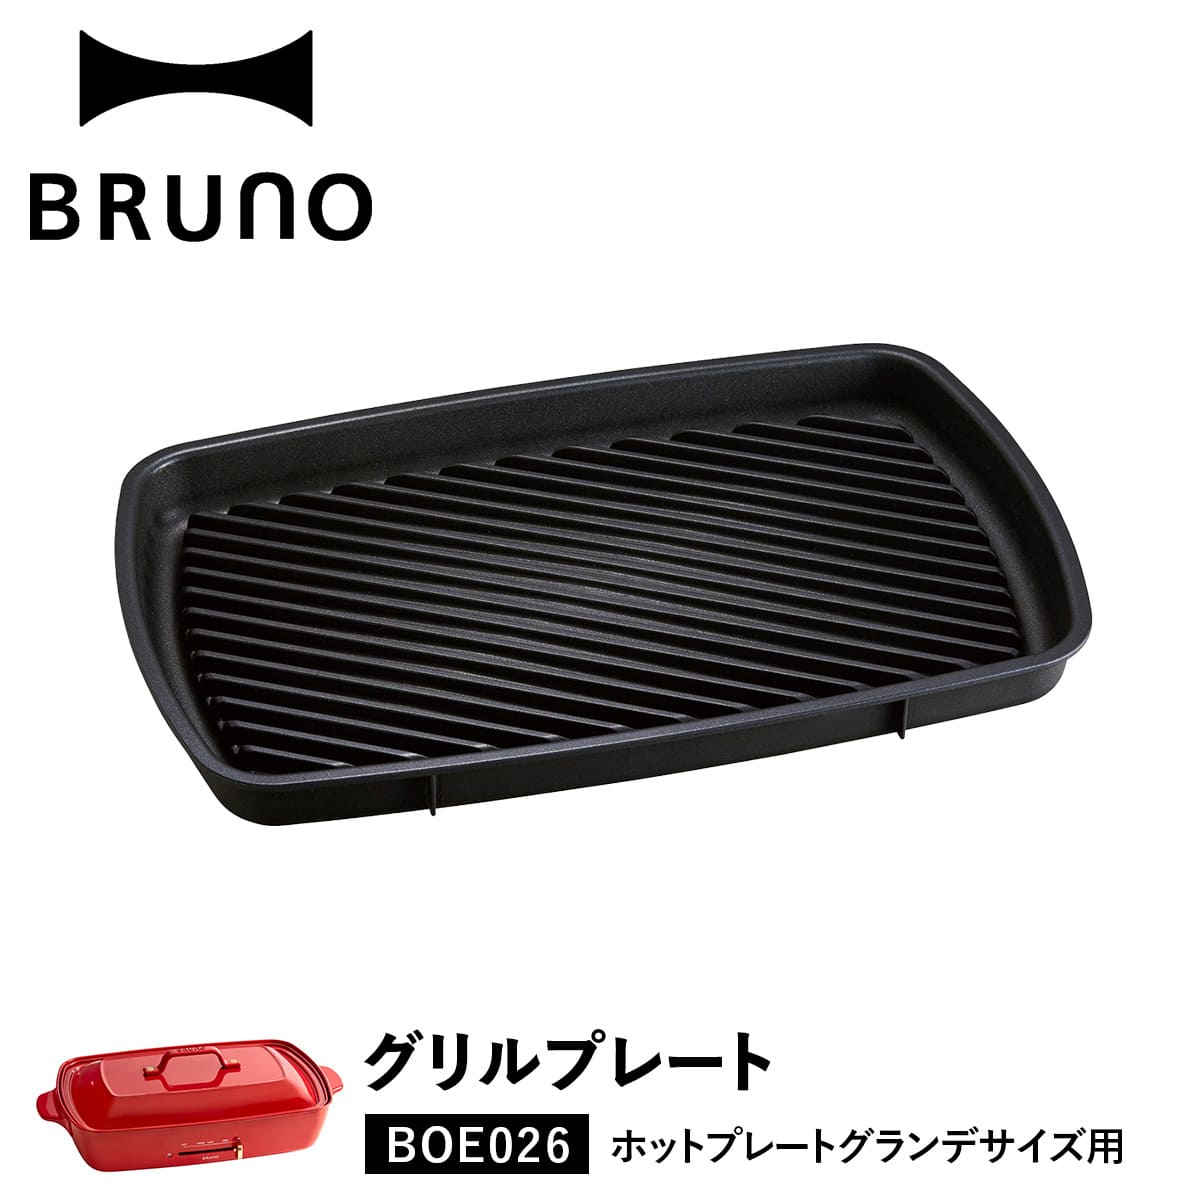 ブルーノ BRUNO ホットプレート 焼肉 ホットプレート グランデサイズ用 オプション プレート 大型 大きい 大きめ 料理 パーティ キッチン 家電 ブラック 黒 BOE026